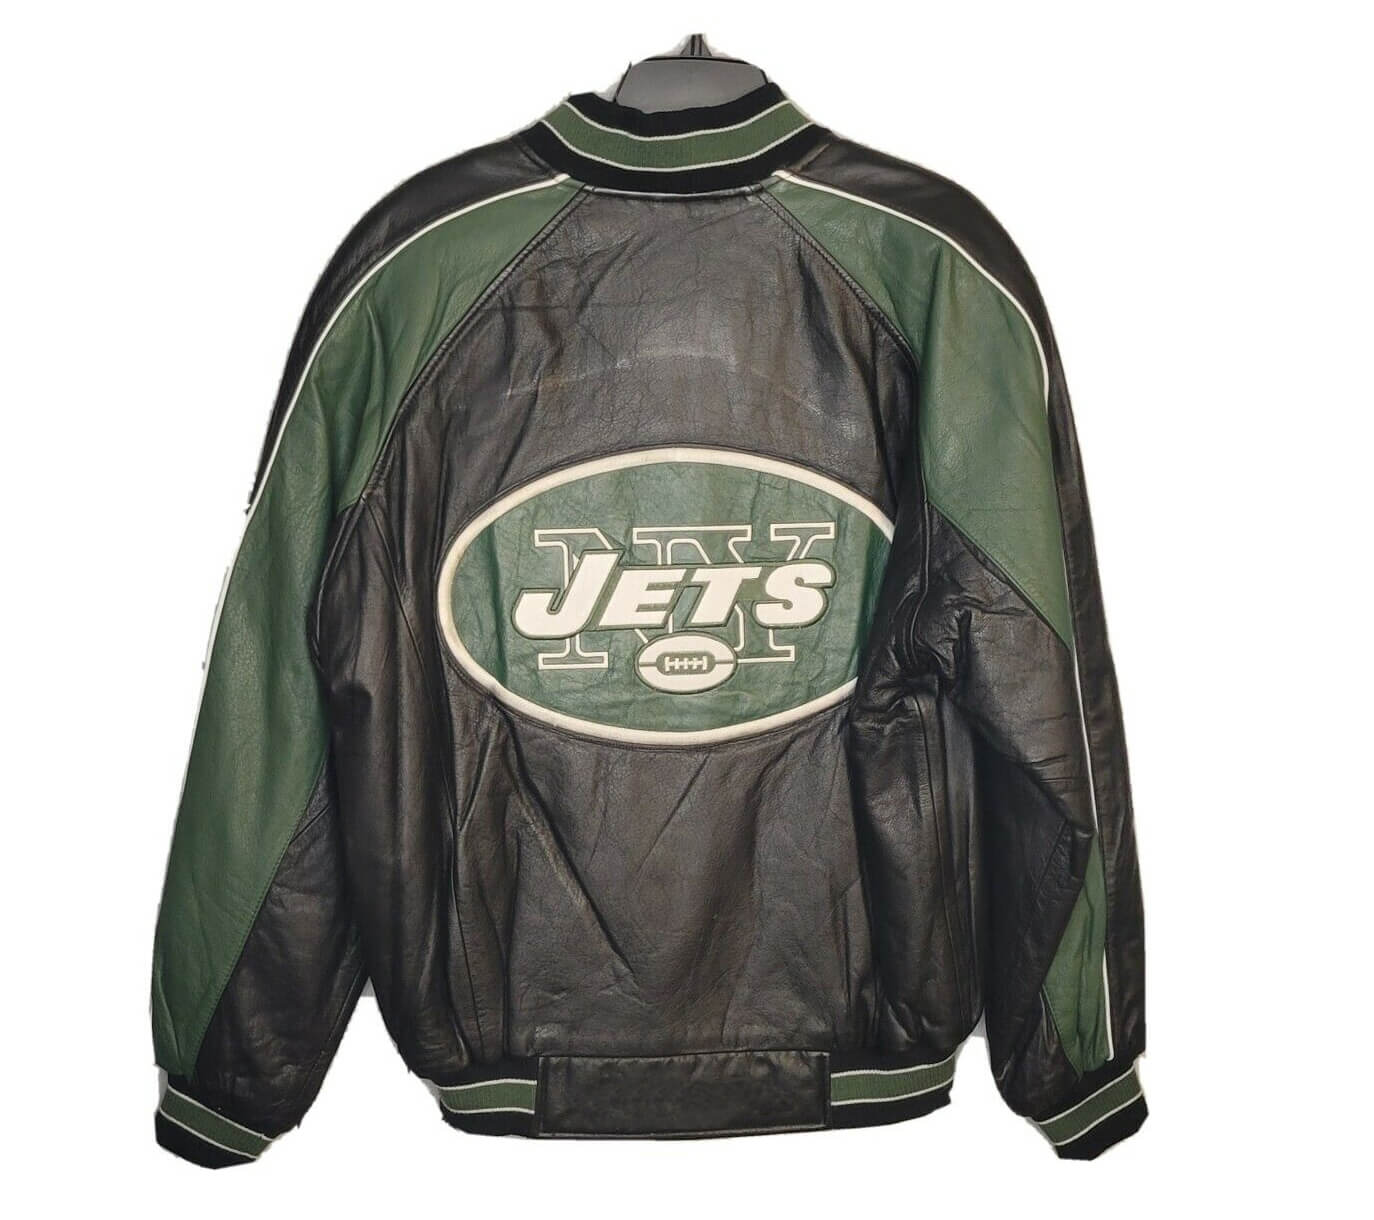 Black Design - New York Jets Pro Shop